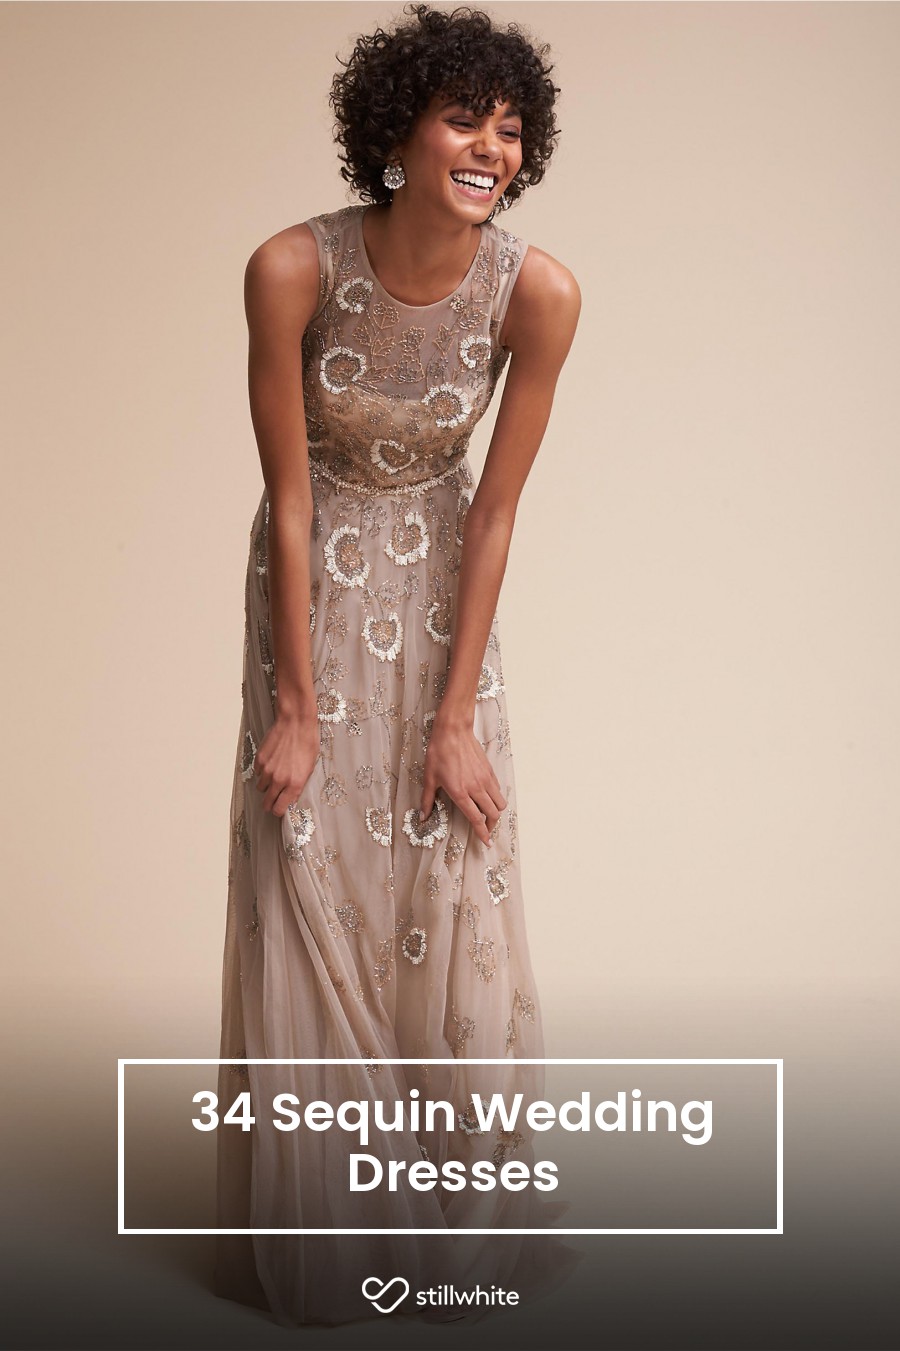 34 Sequin Wedding Dresses – Stillwhite Blog